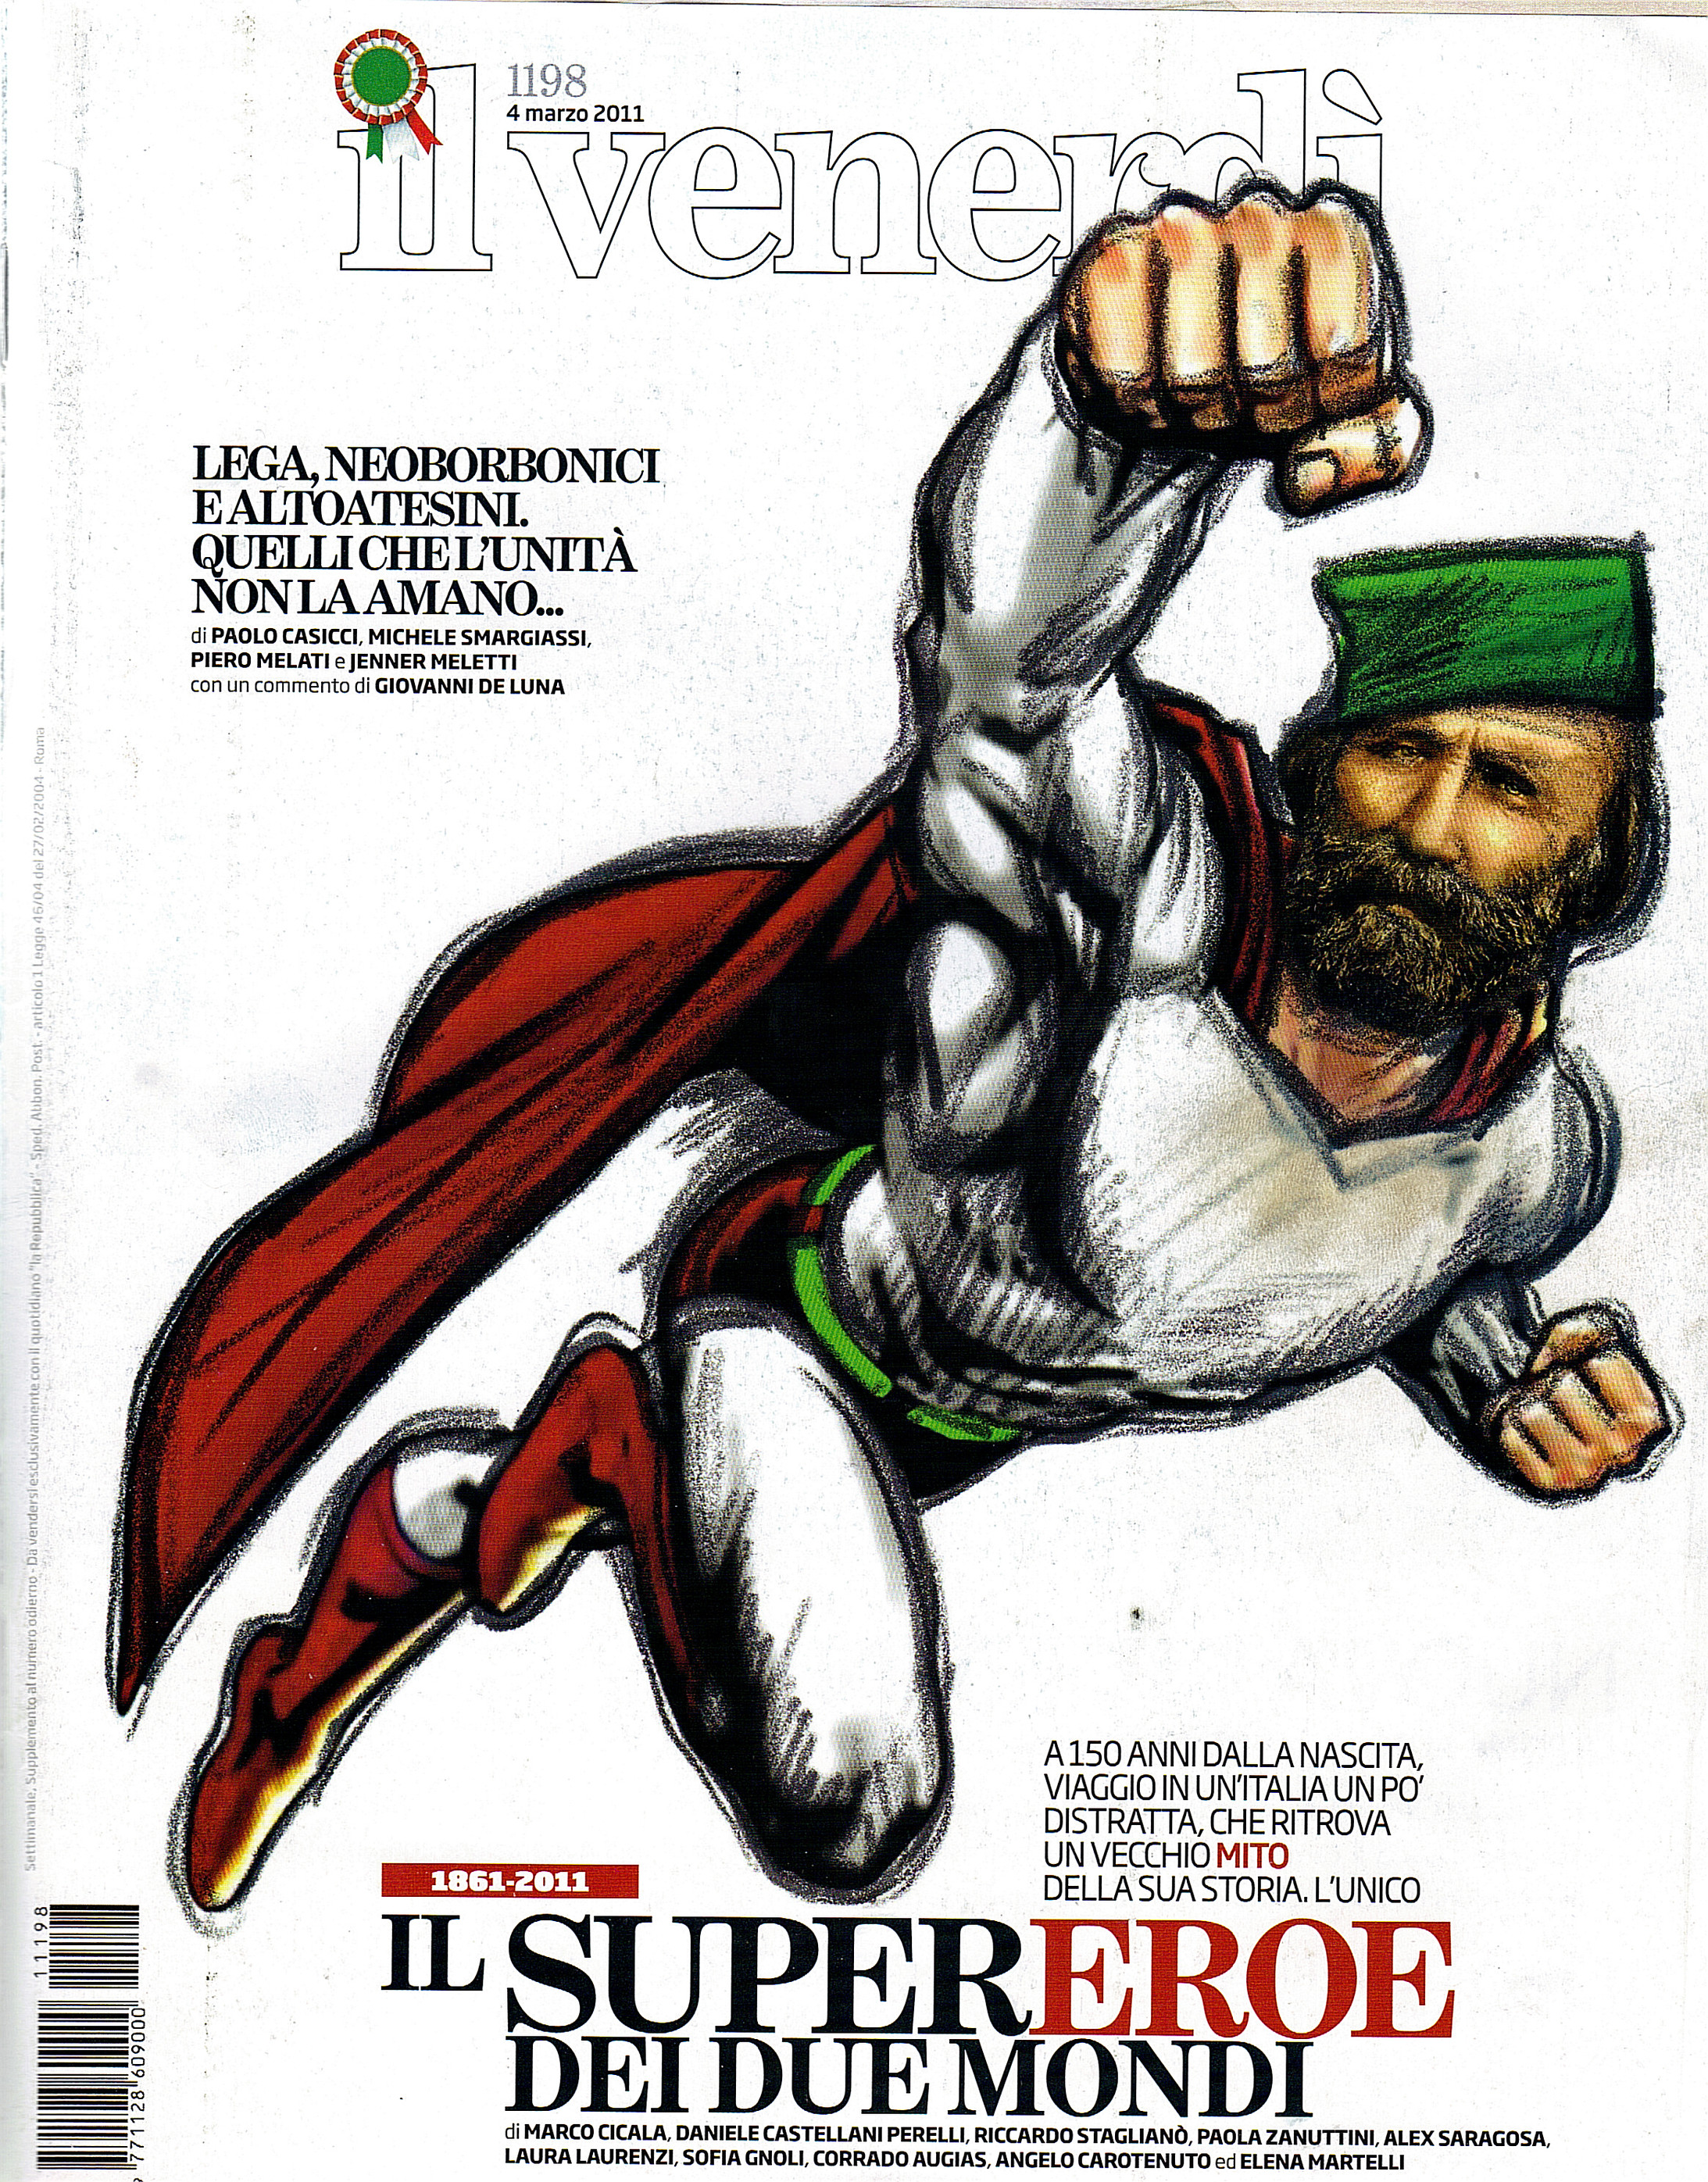 Der Superheld. "Il venerdi", die Magazinbeilage der "Repubblica", 4. März 2011